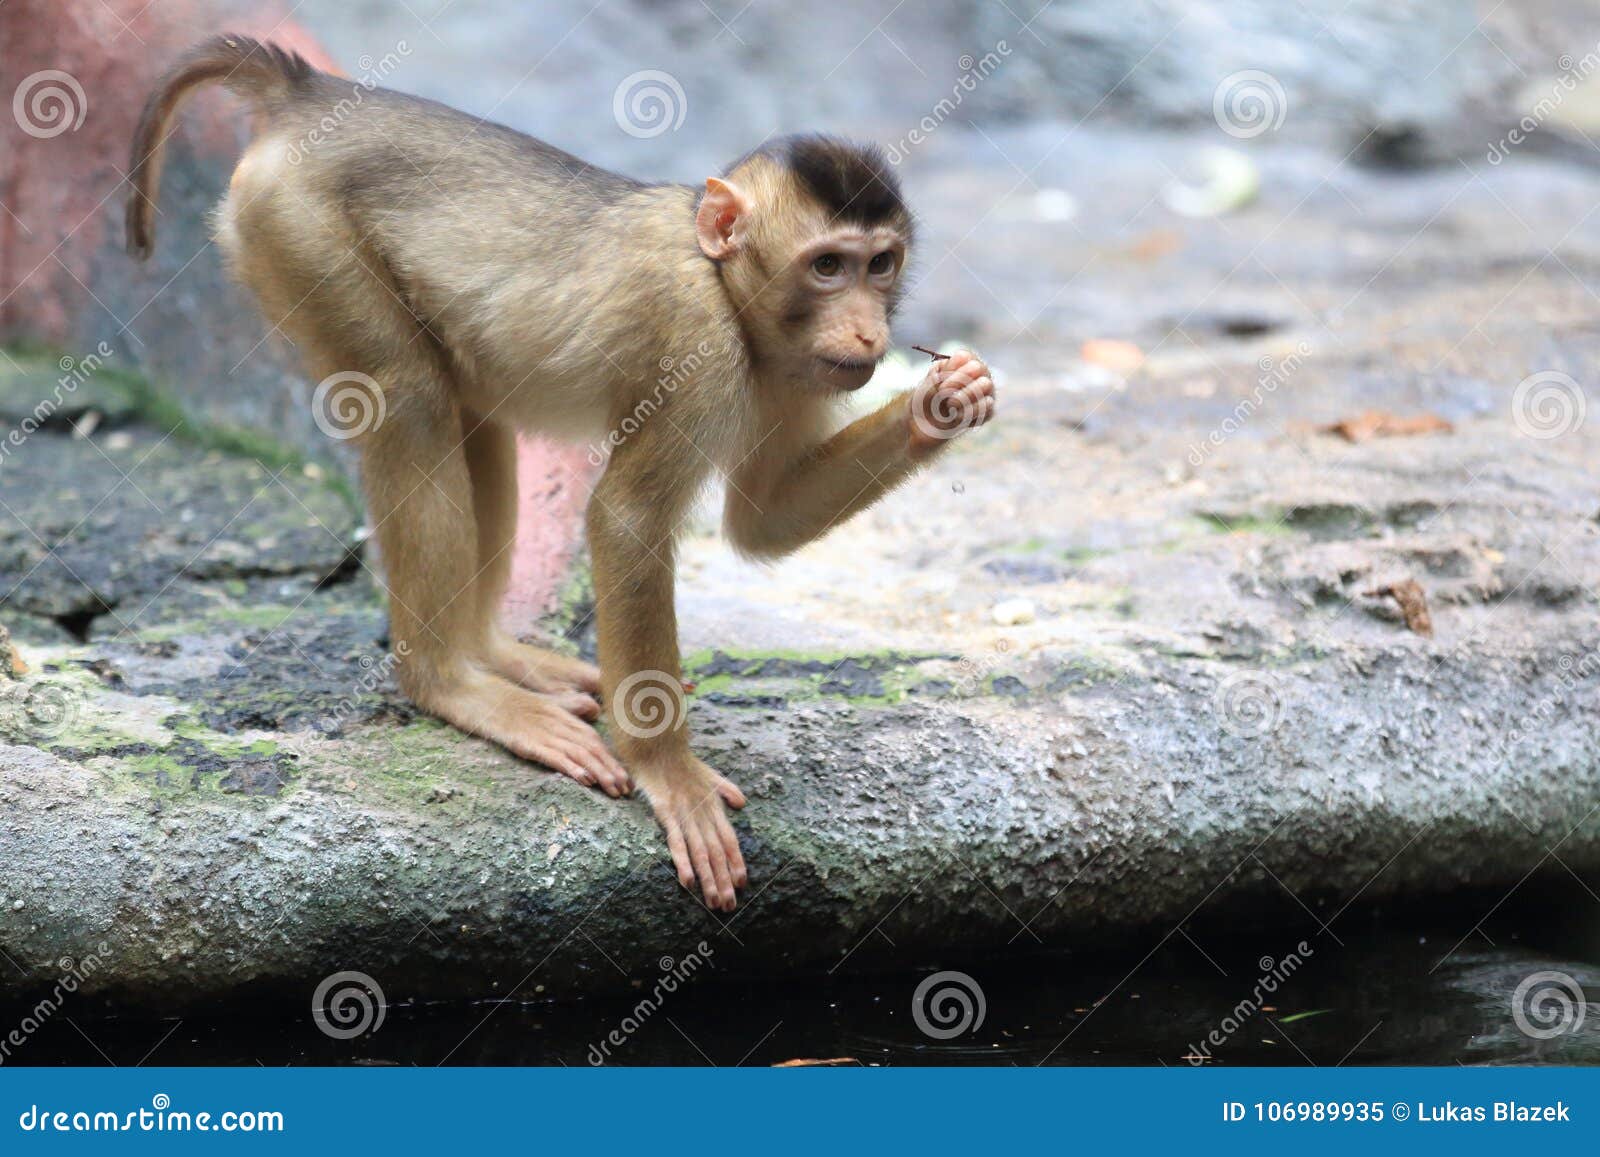 sunda-pig tailed macaque offspring